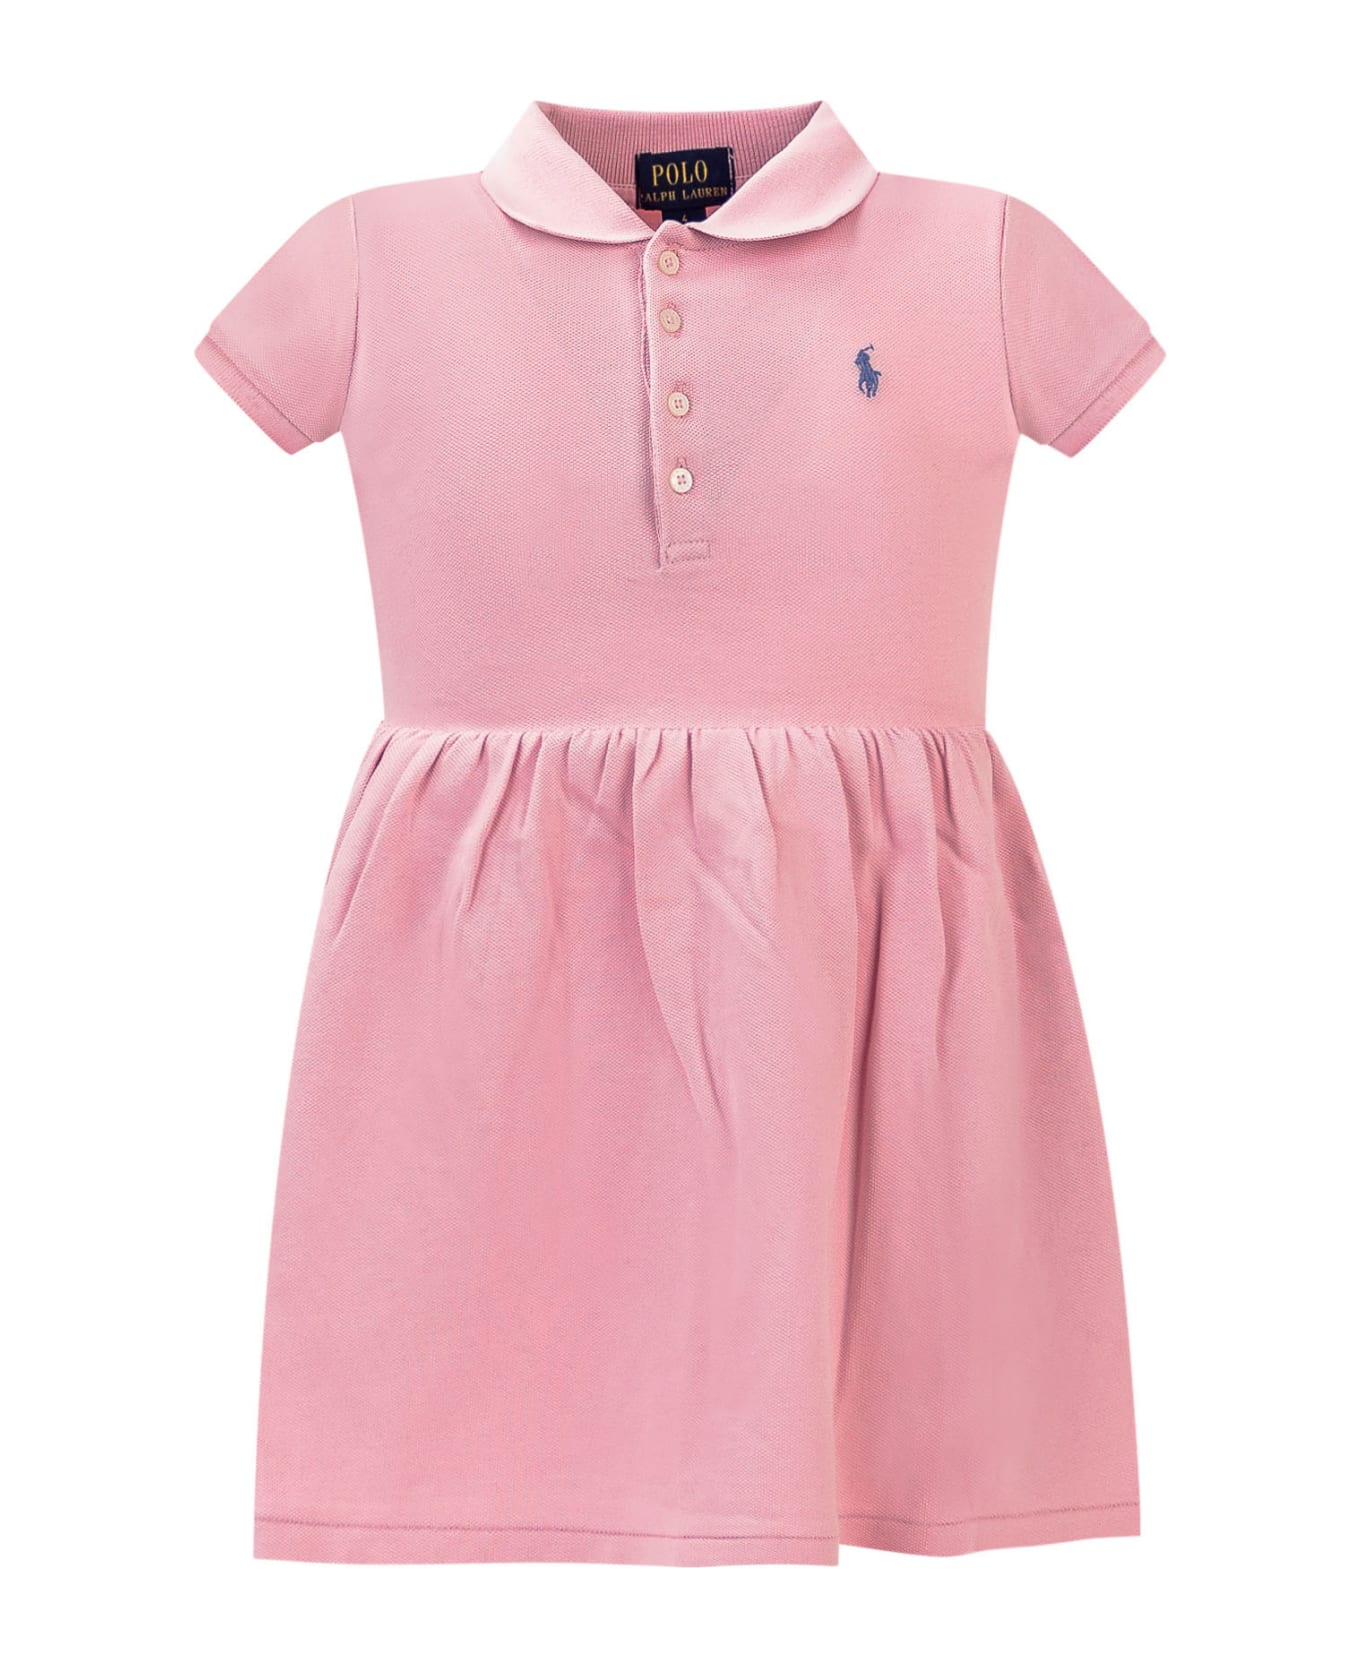 Polo Ralph Lauren Logo Dress - Pink トップス